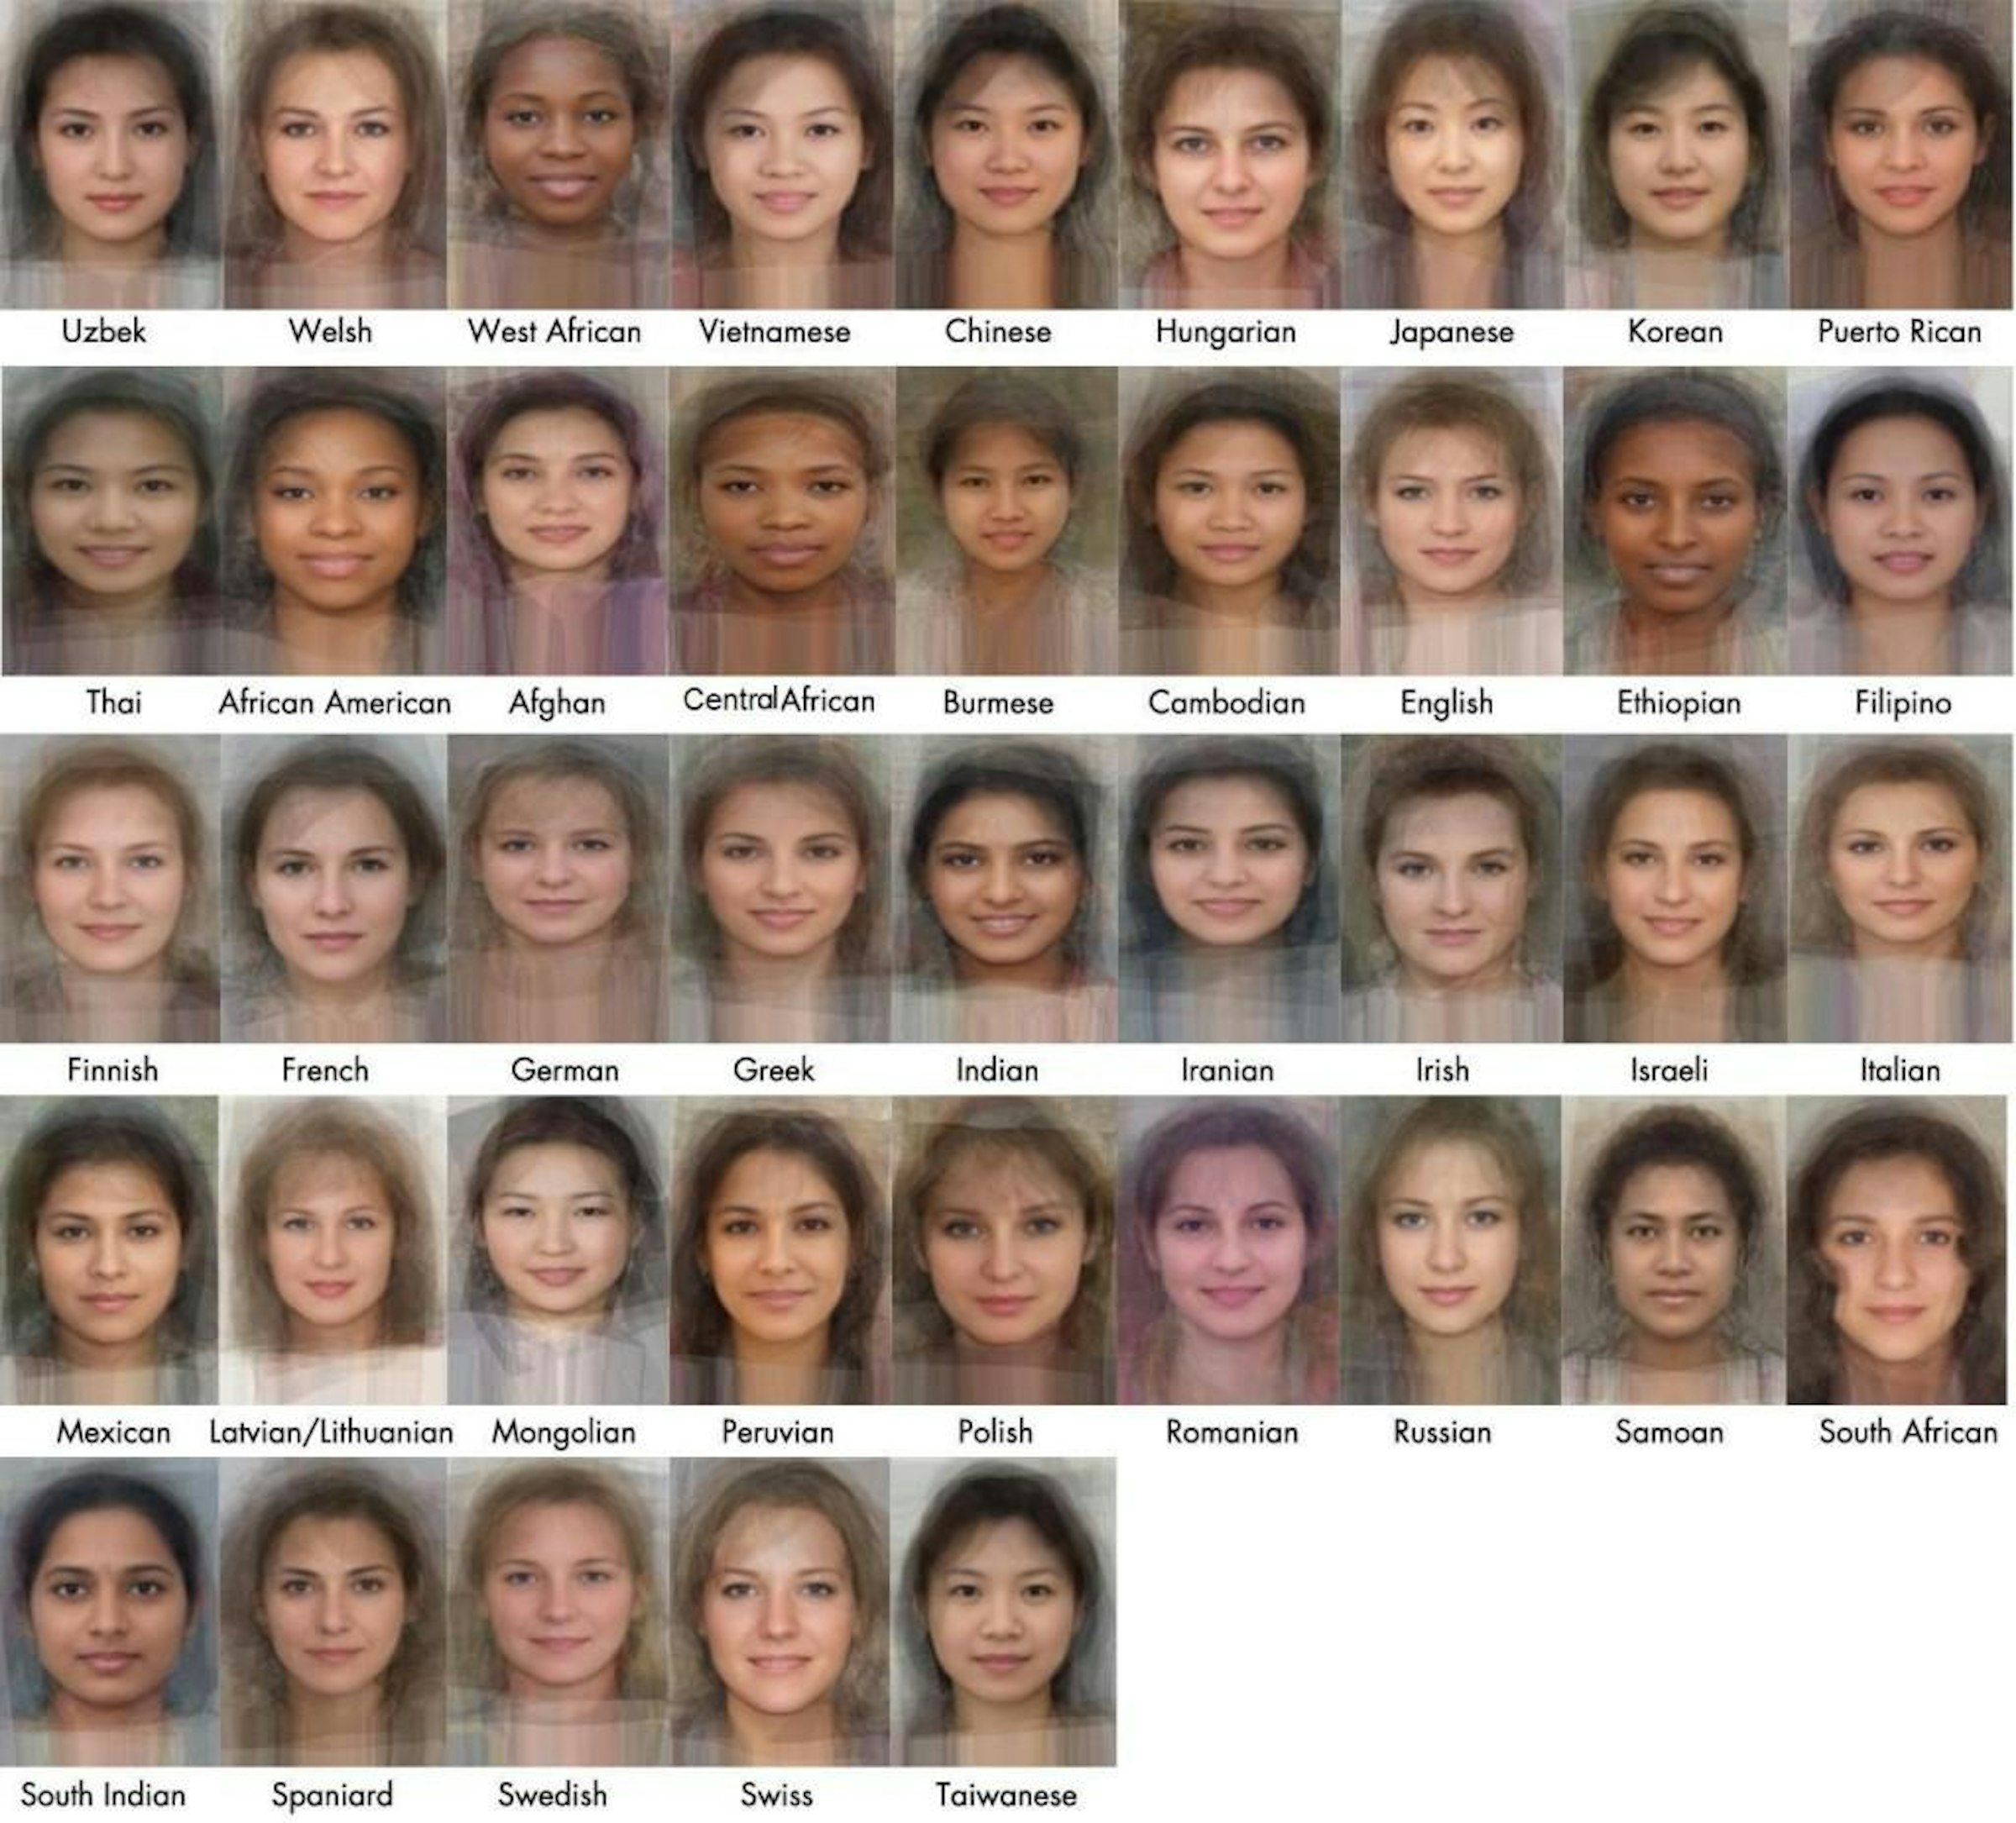 画像: https://leadingpersonality.wordpress.com/2013/09/30/average-faces-of-men-and-women-around-the-world/